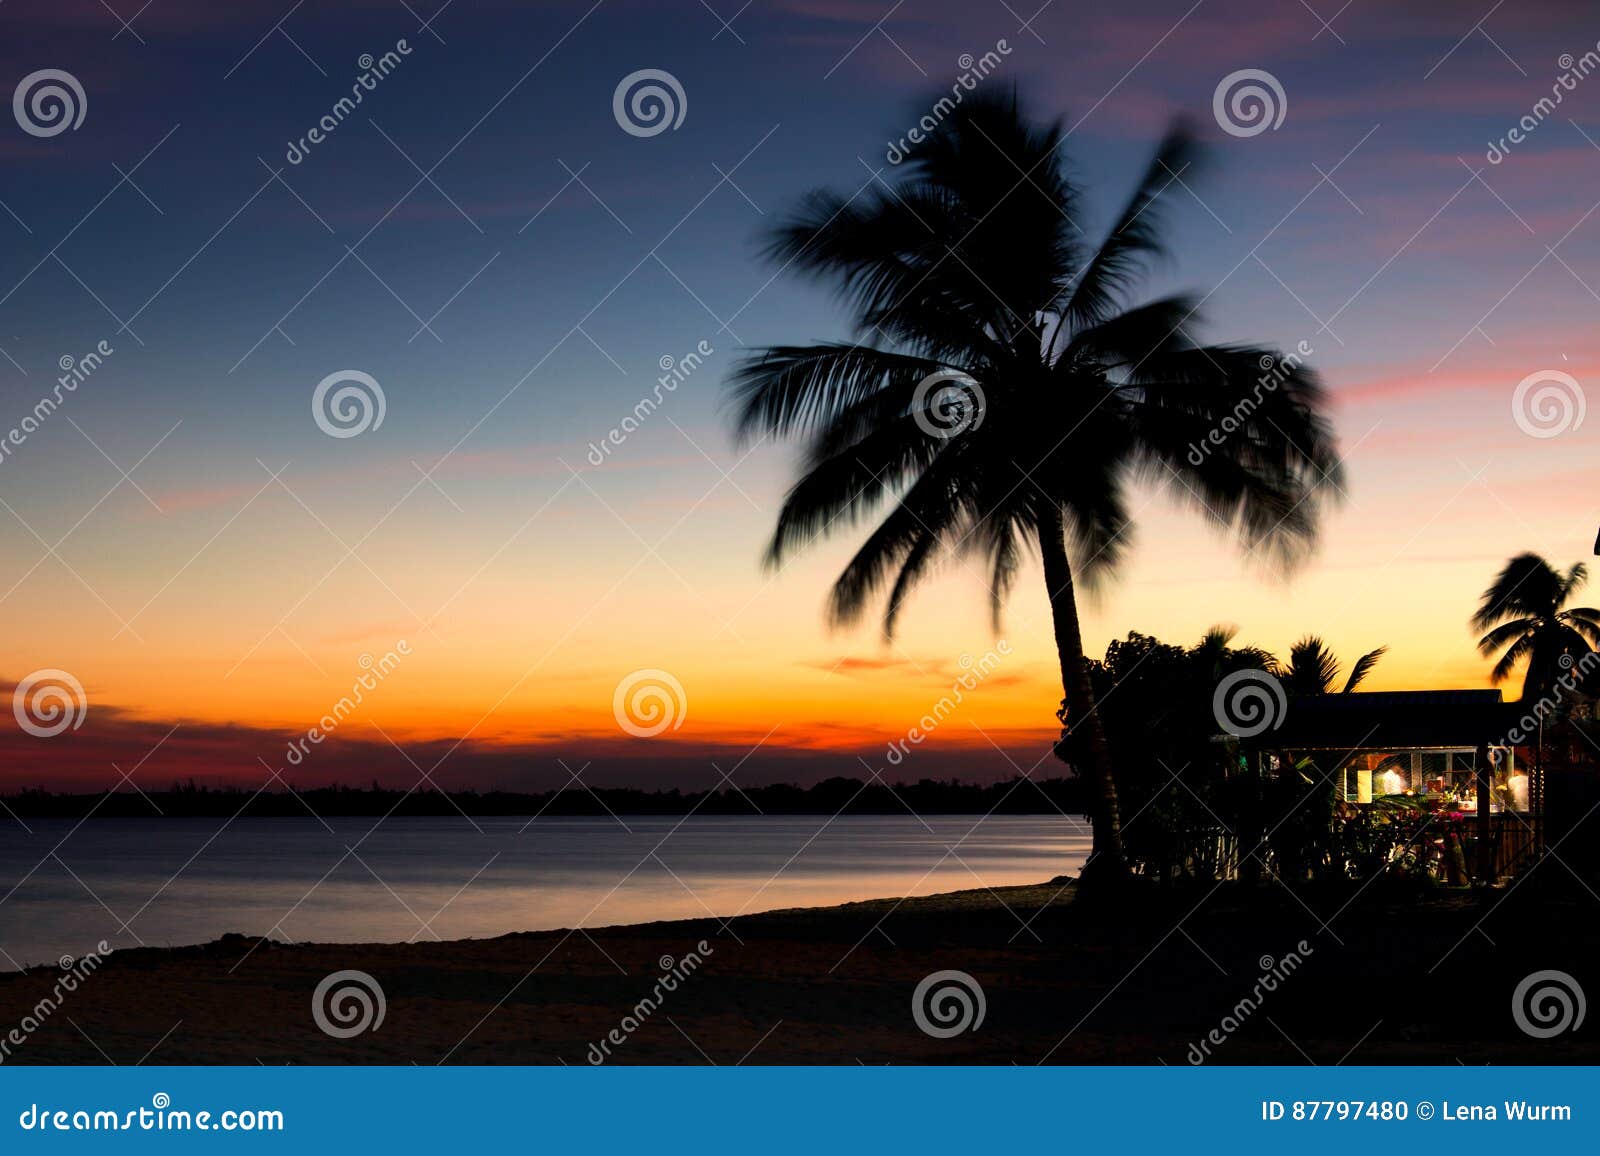 beautiful sunset in playa larga beach, bay of pigs, matanzas, cub